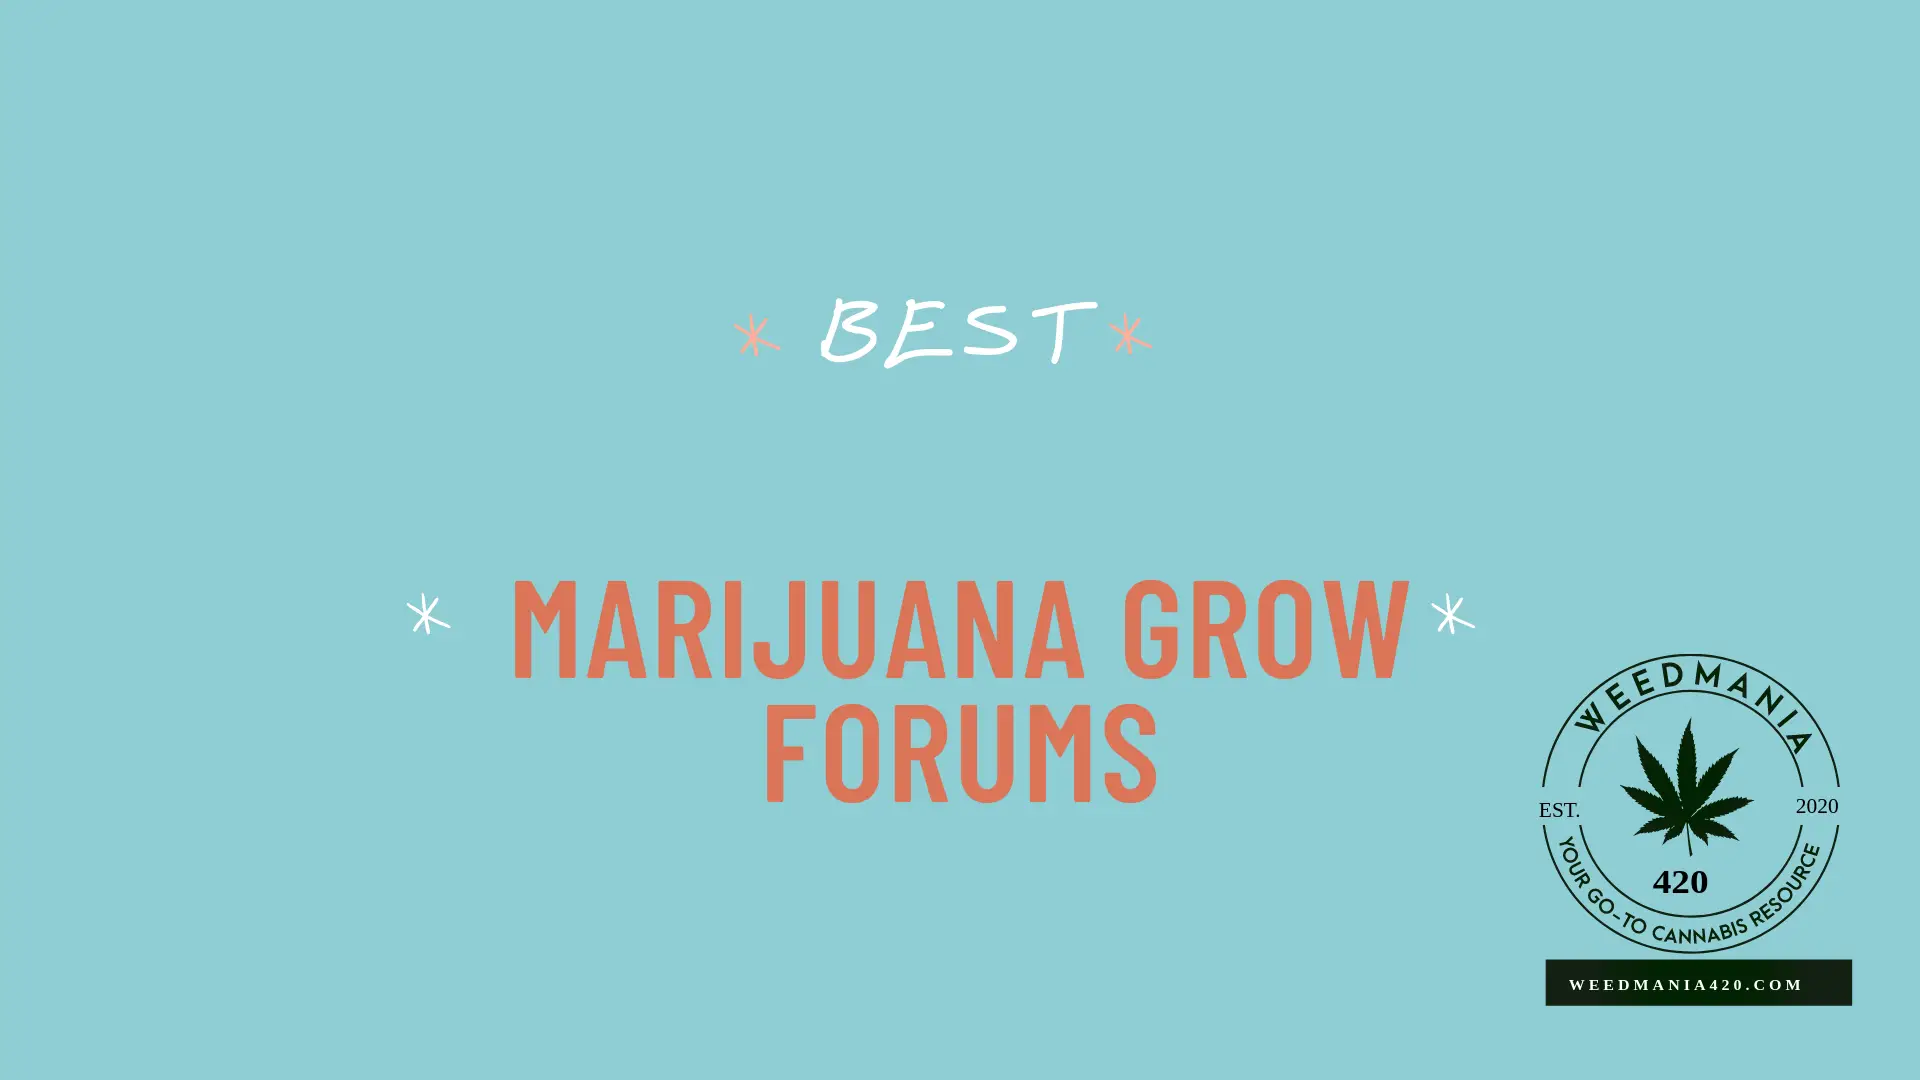 Best Marijuana Grow Forums in 2020